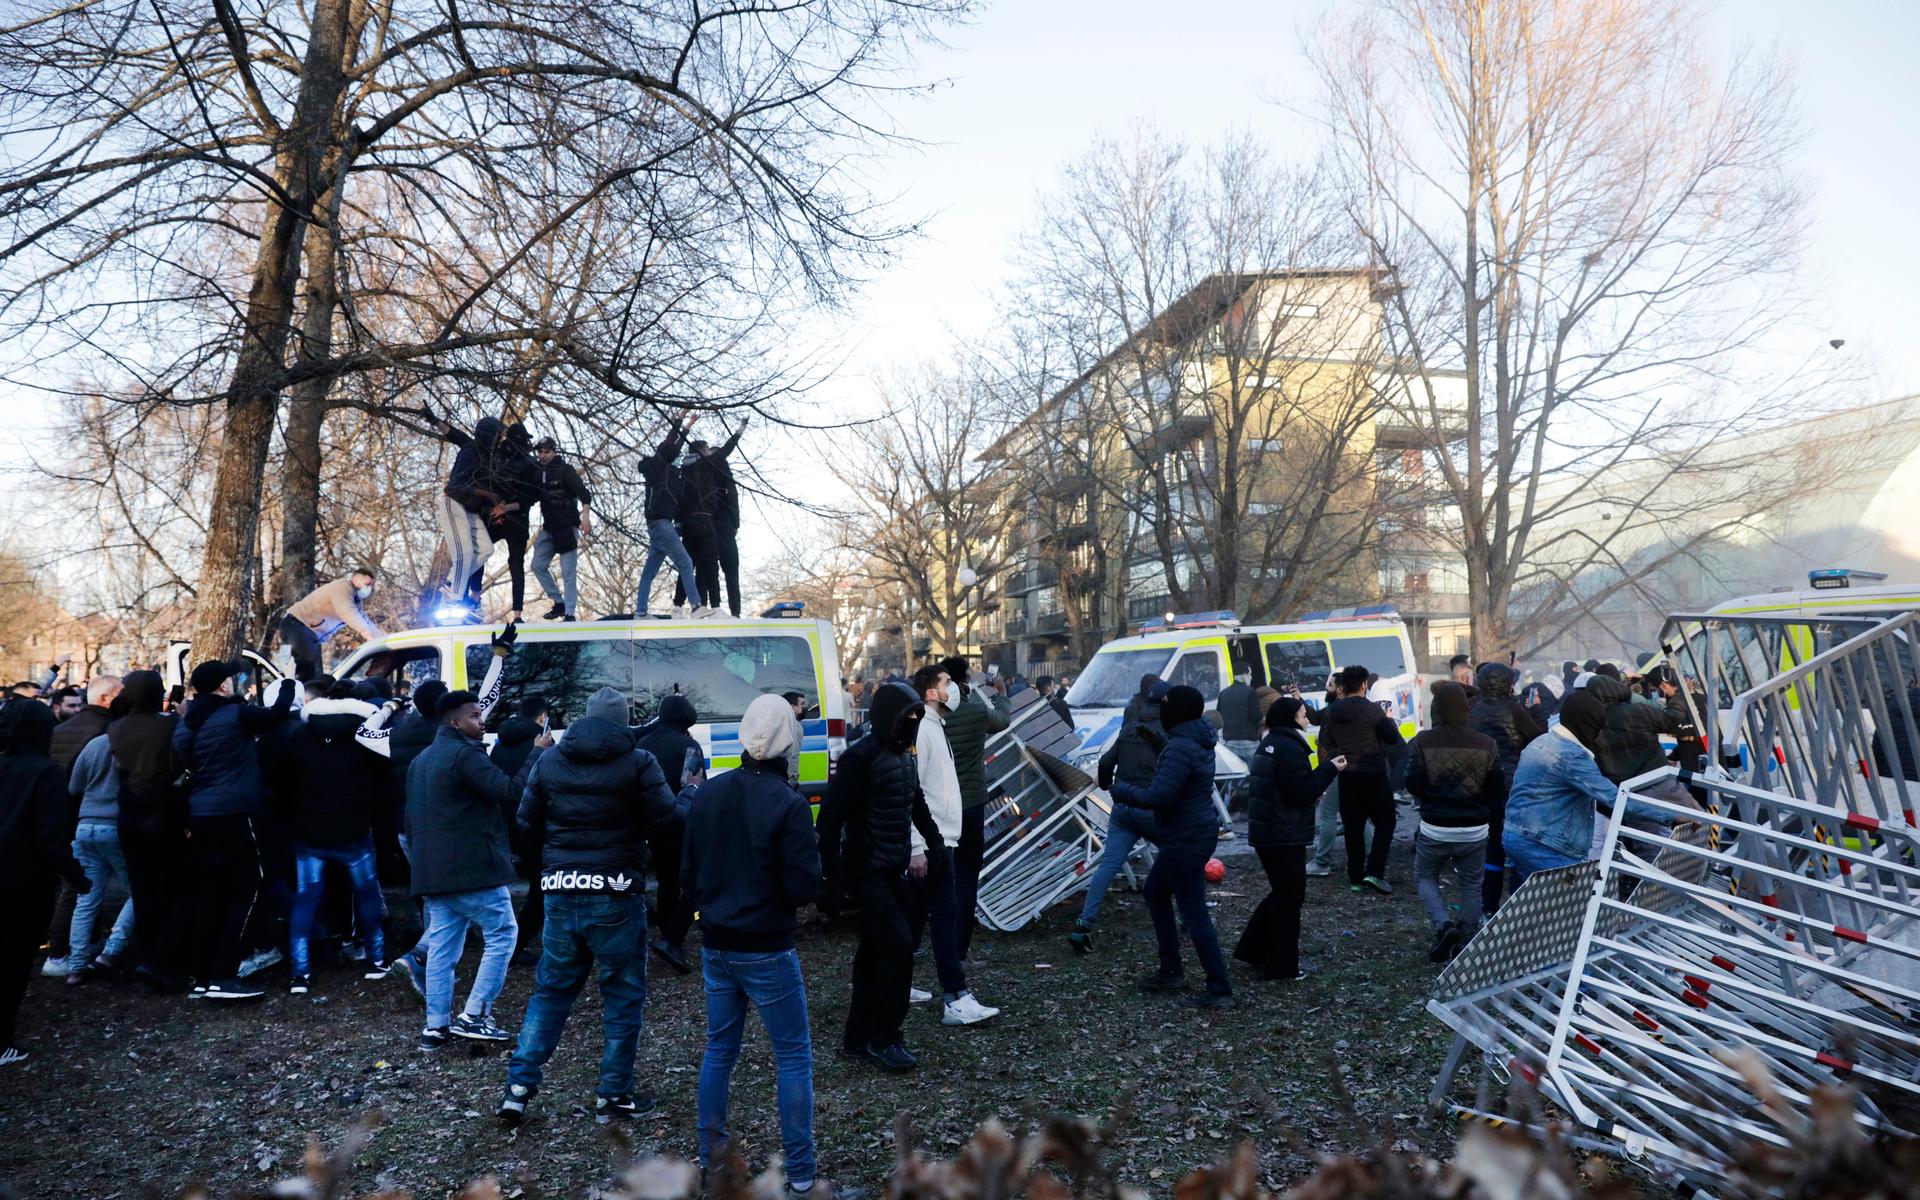 Motdemonstranter klättrar upp på en polisbuss i Sveaparken i Örebro, där Rasmus Paludan, partiledare för det danska högerextrema partiet Stram kurs, har fått tillstånd för en sammankomst på långfredagen. 